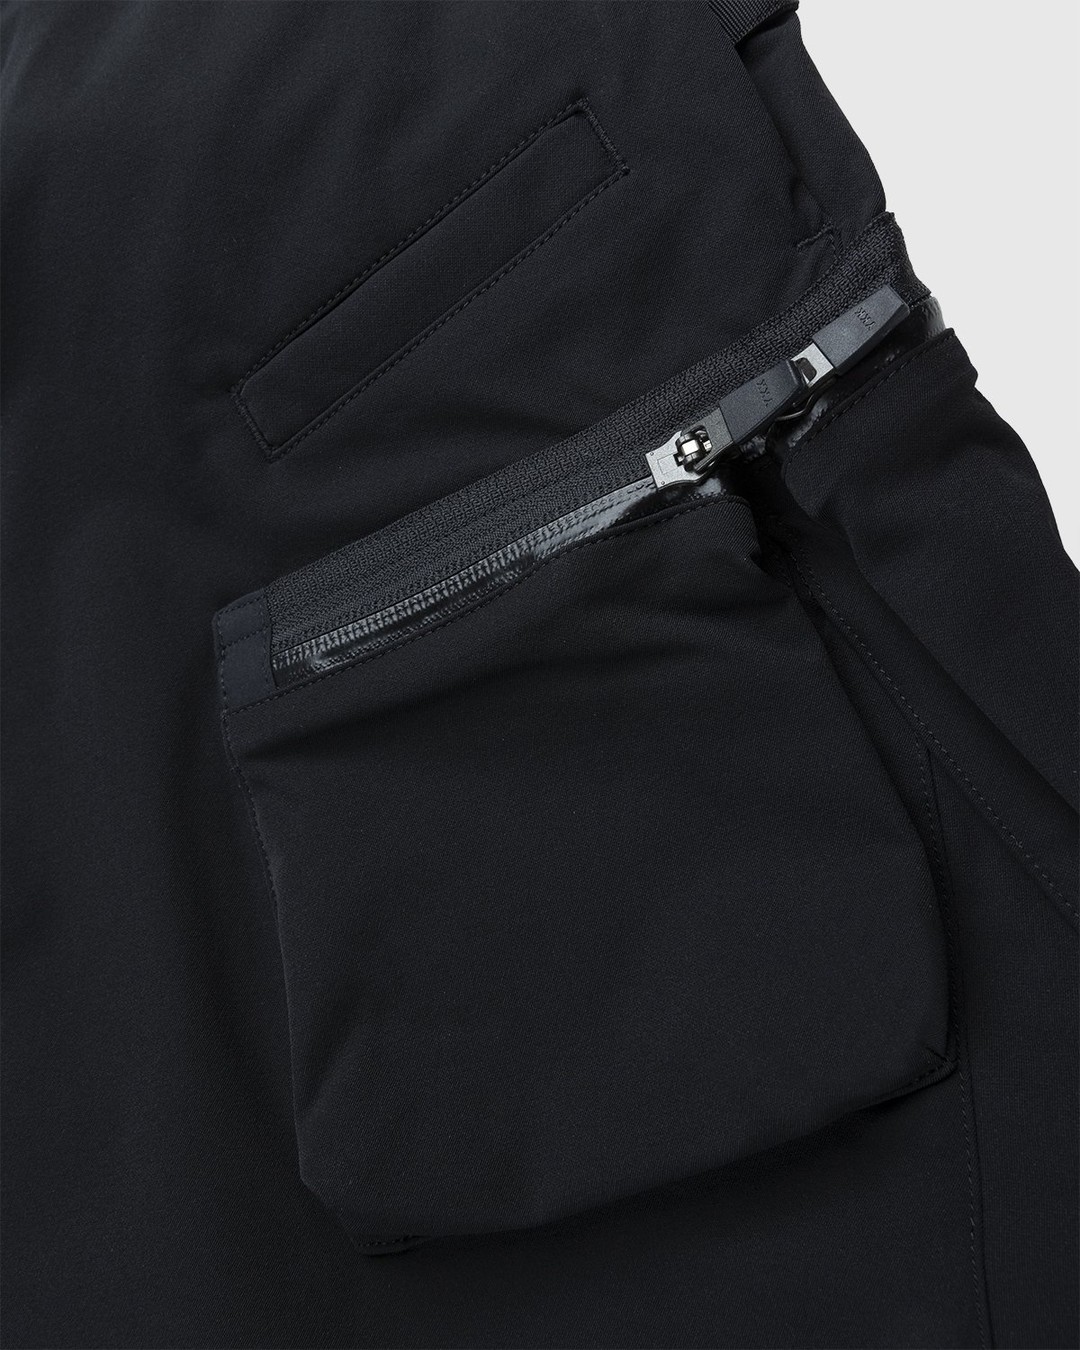 ACRONYM – P41-DS Pant Black - Pants - Black - Image 3